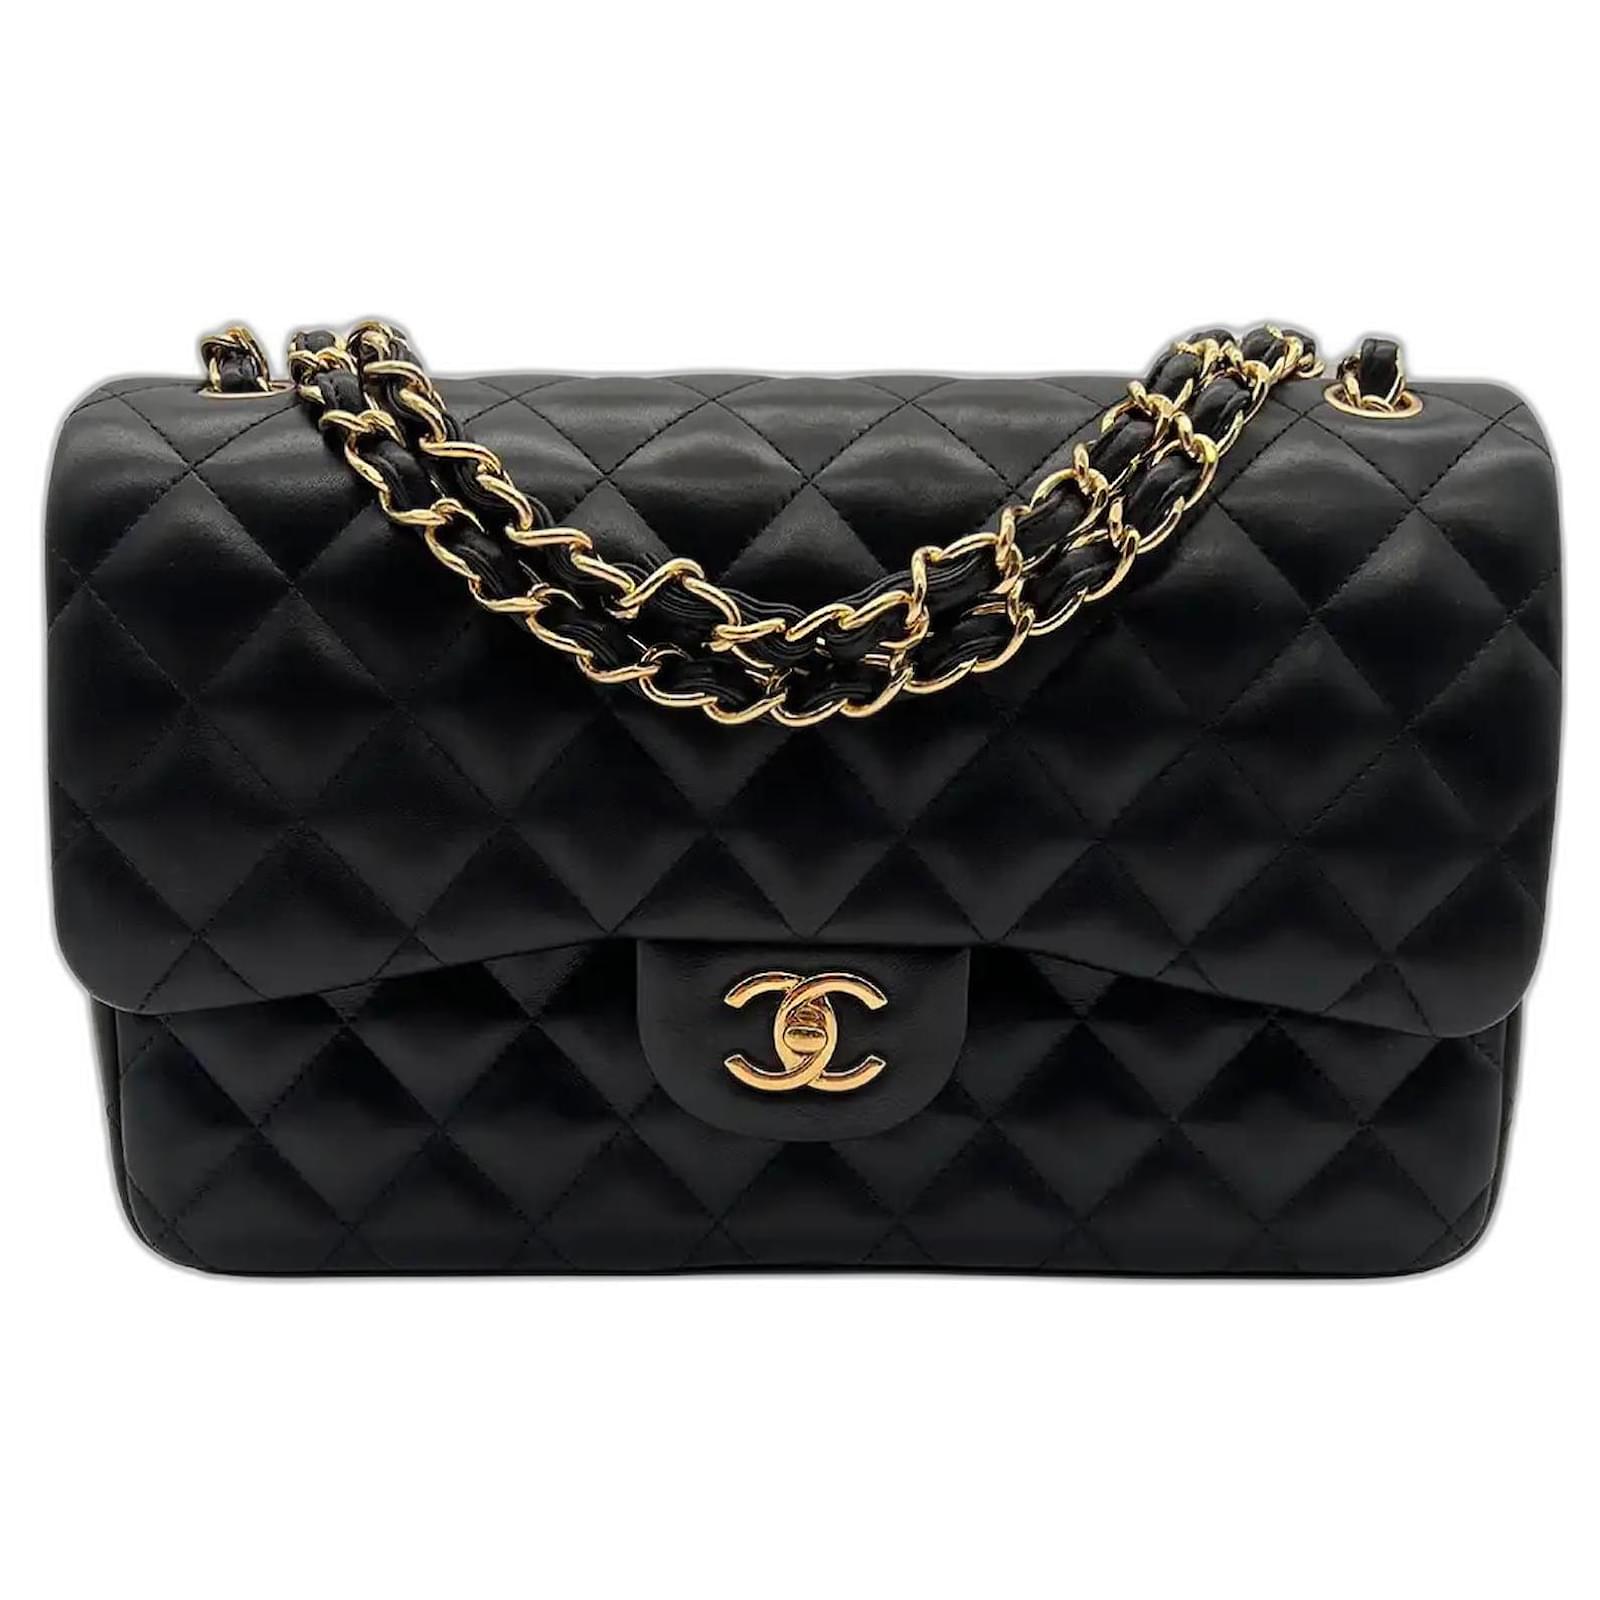 Chanel Timeless Jumbo Handbag